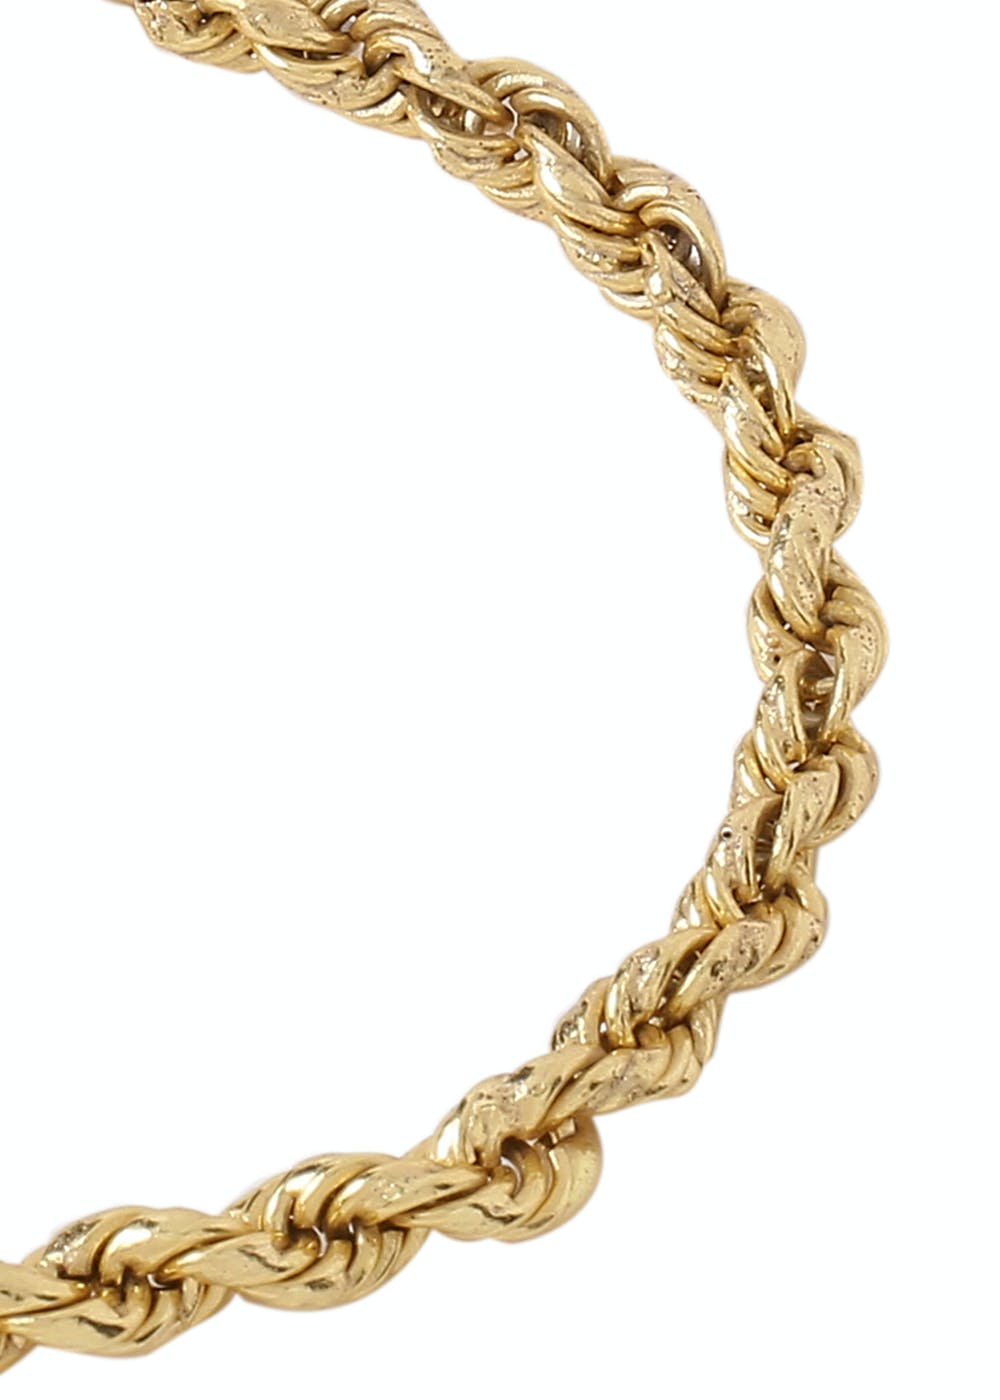 Get Rope Design Chain Bracelet at ₹ 800 | LBB Shop